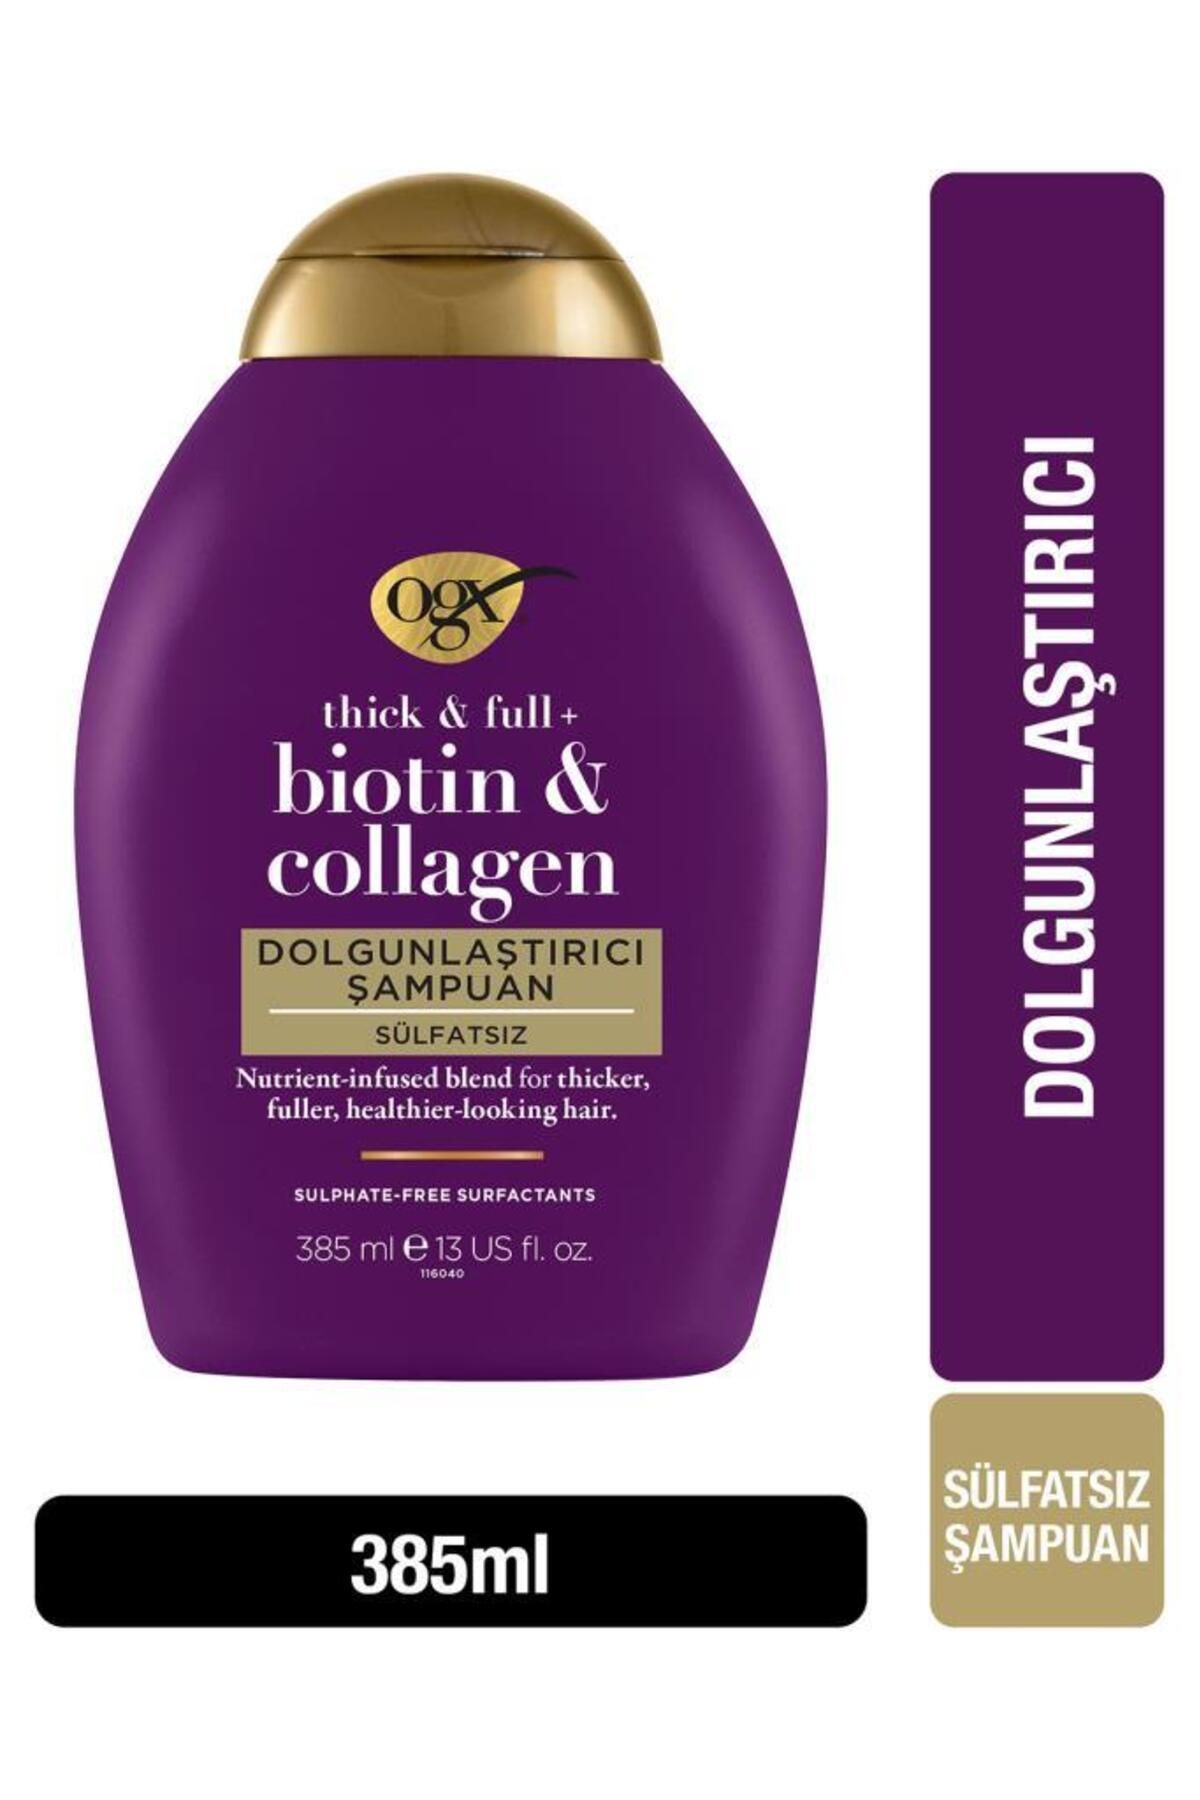 OGX Dolgunlaştırıcı Biotin & Collagen Şampuan 385 ml